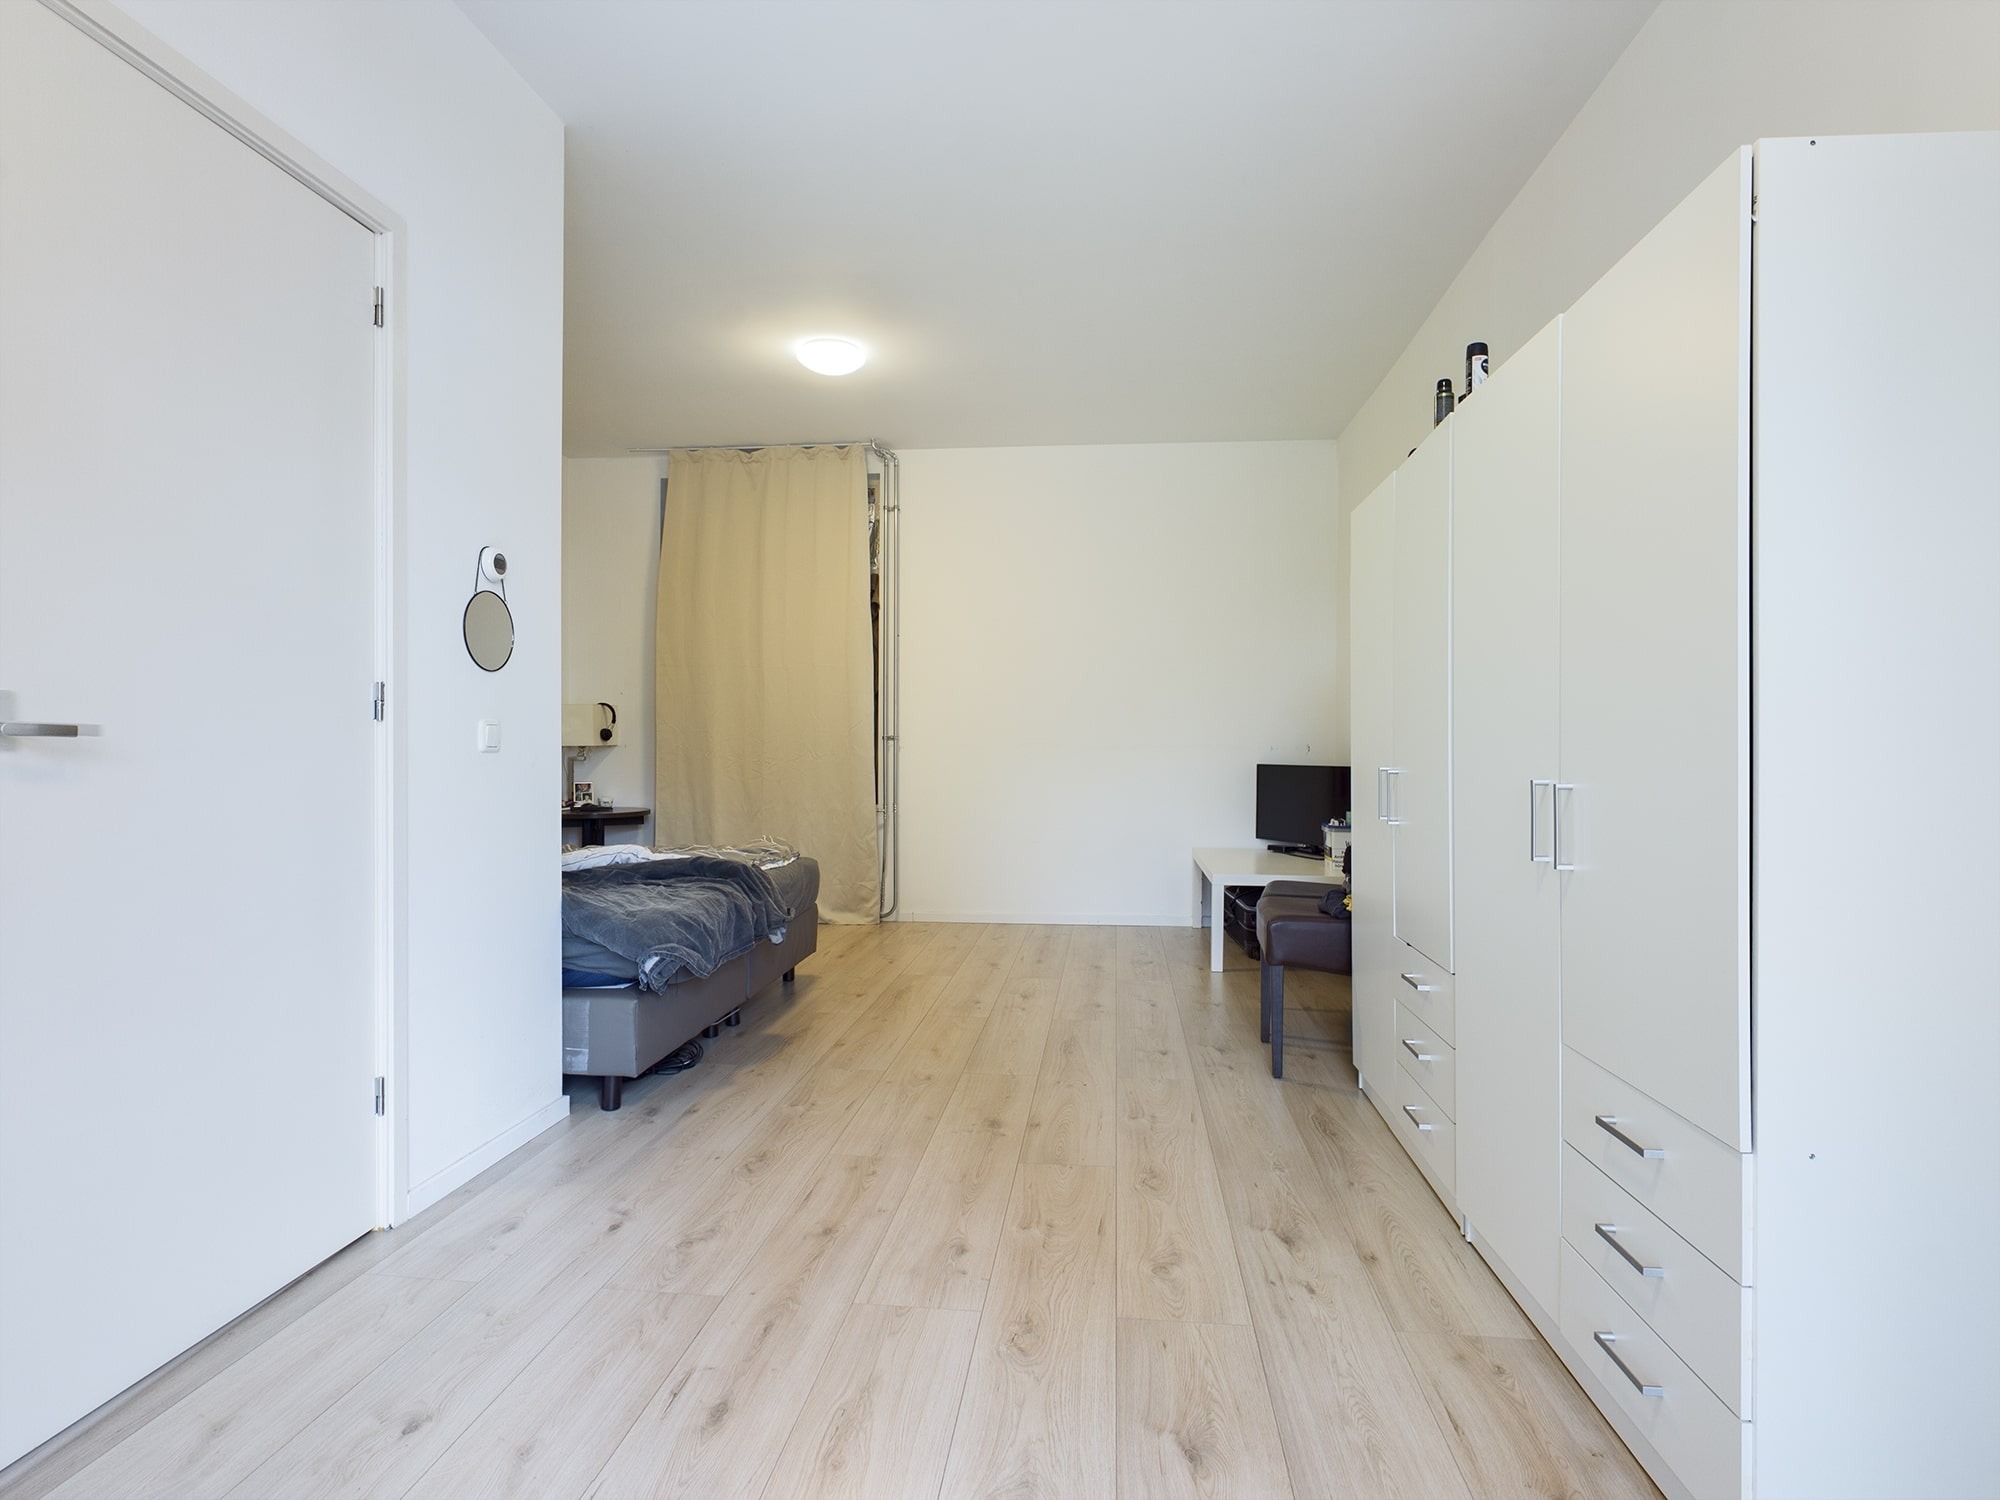 Woning / appartement - Bergen op Zoom - Prins Bernhardlaan 97 99